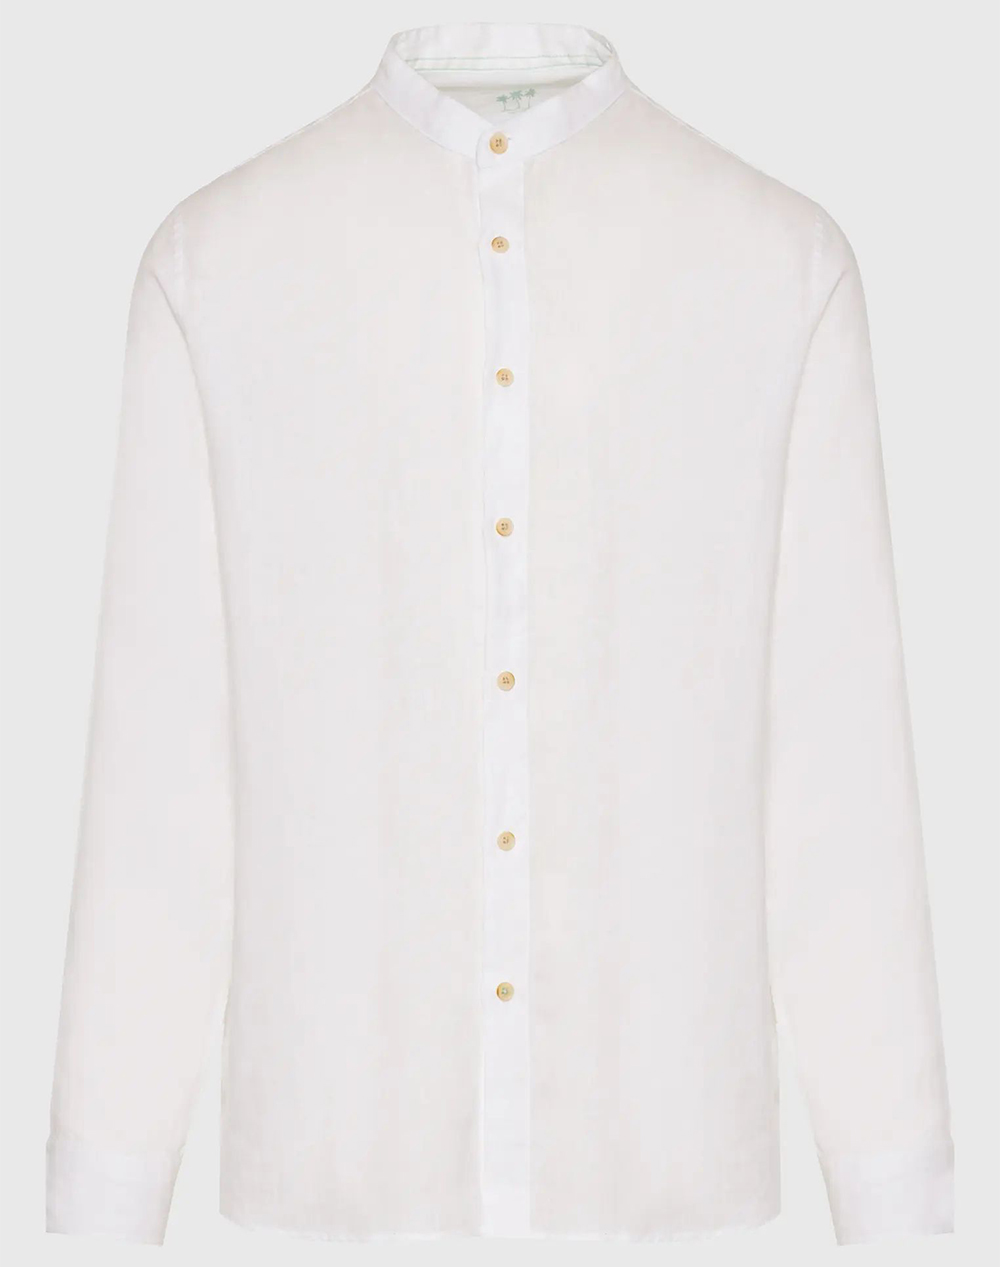 FUNKY BUDDHA Garment dyed λινό πουκάμισο με λαιμό mao FBM009-003-05-WHITE White